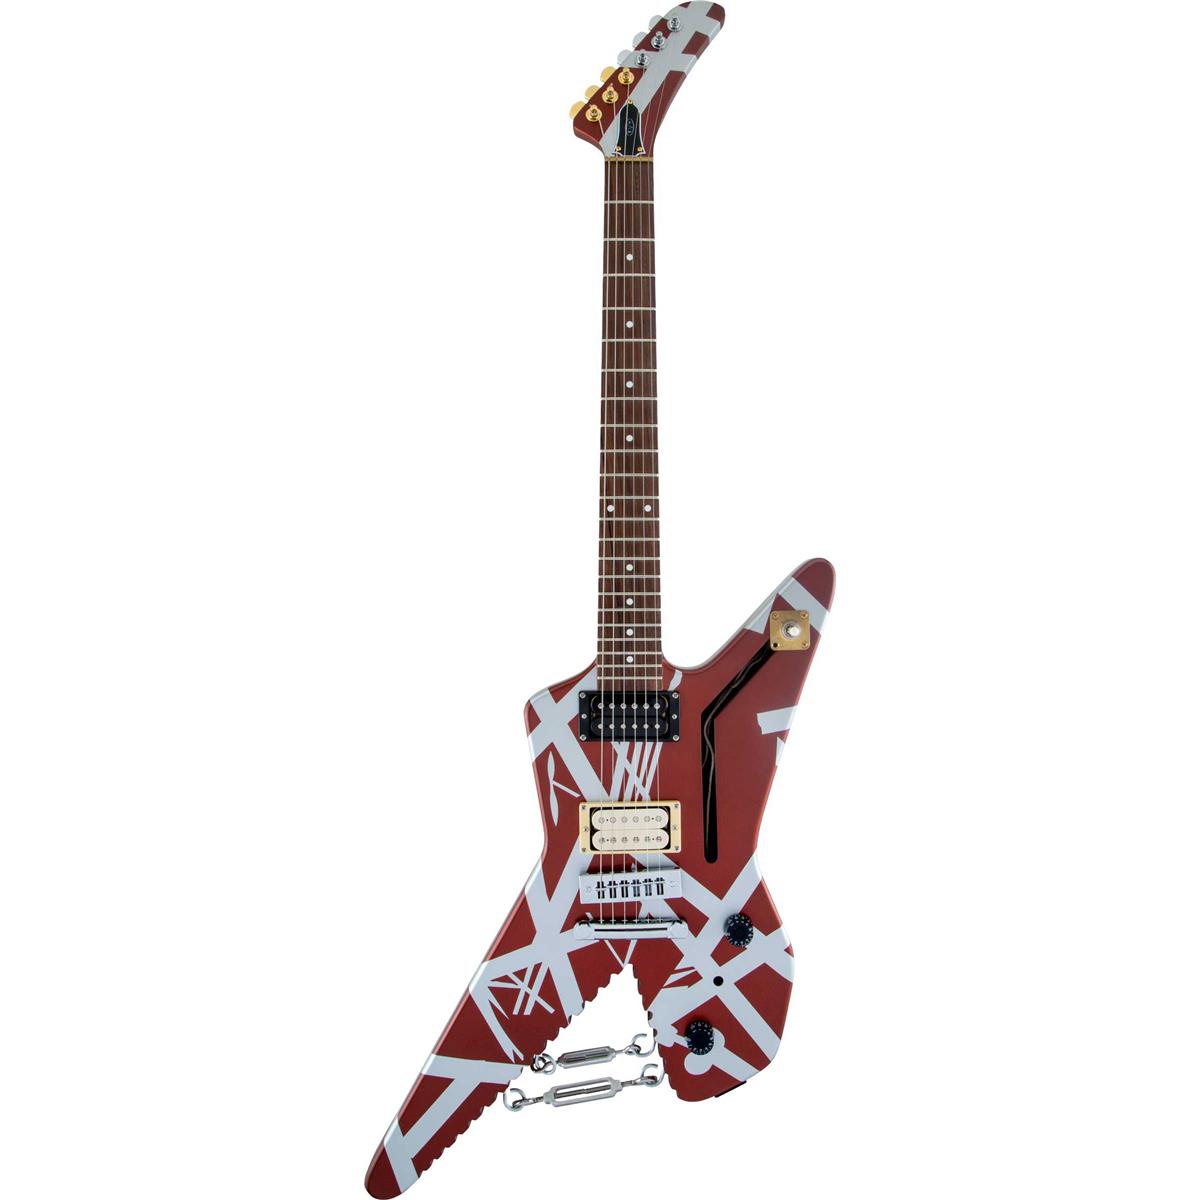 EVH Striped Series Electric Guitar (Pau Ferro Fingerboard) $1199 + free s/h